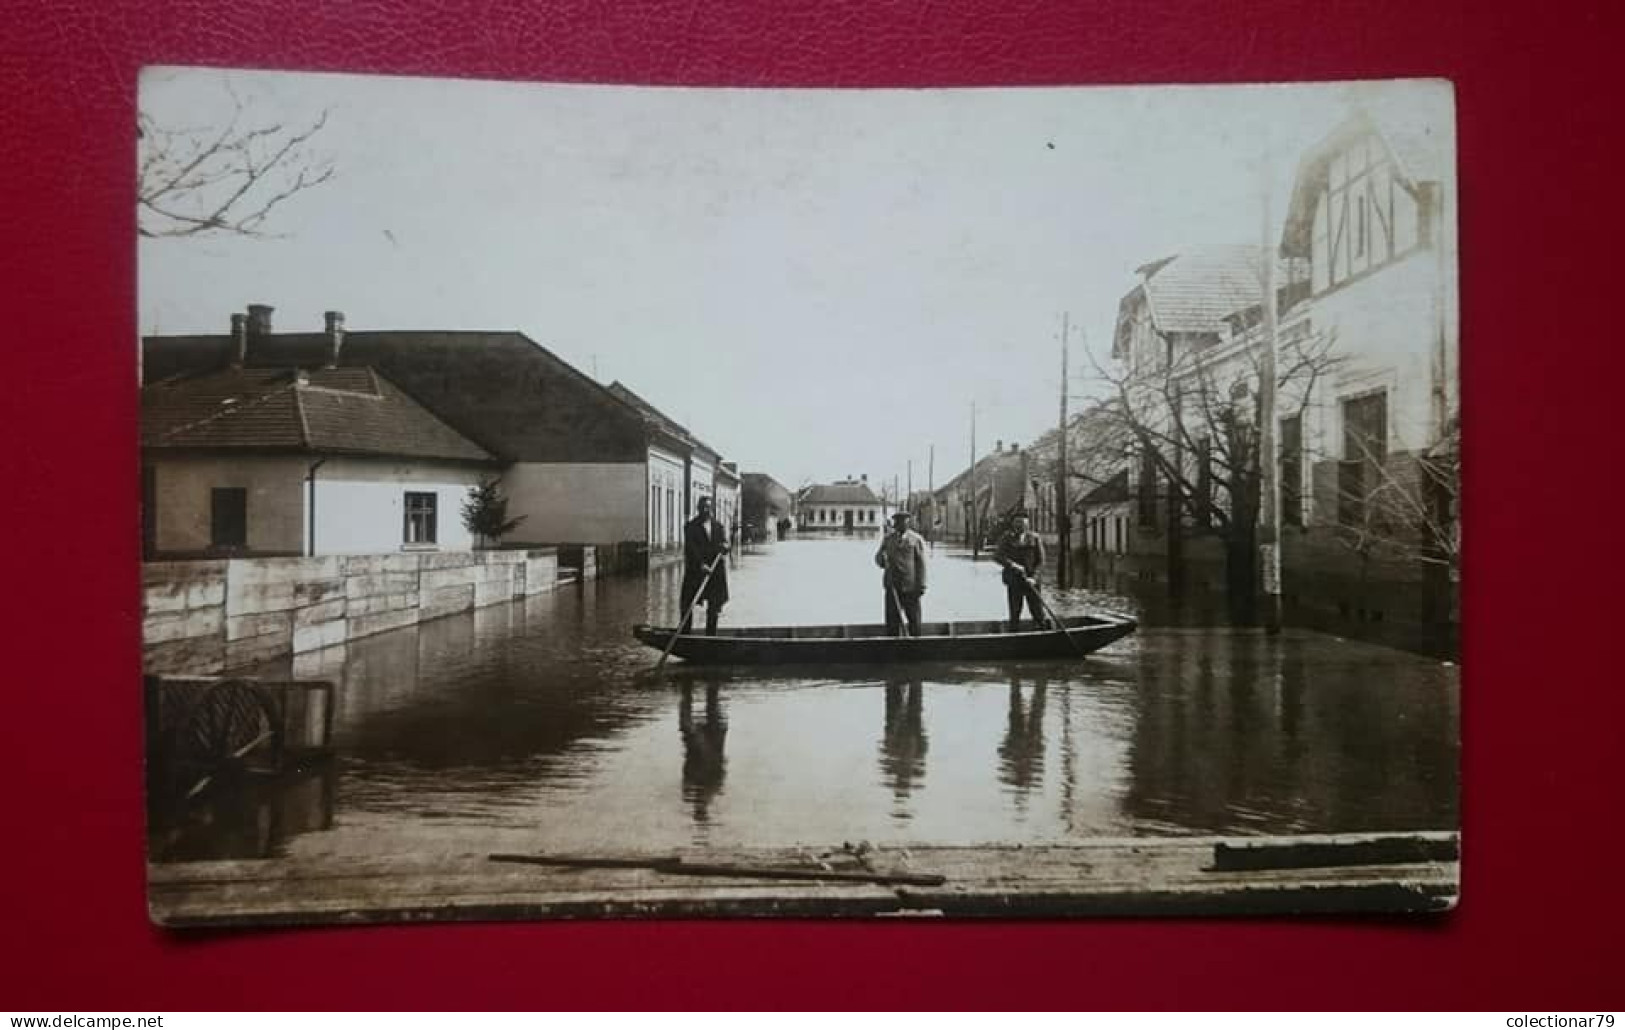 Romania Arad 1932 inundatii lot 4 carti postale